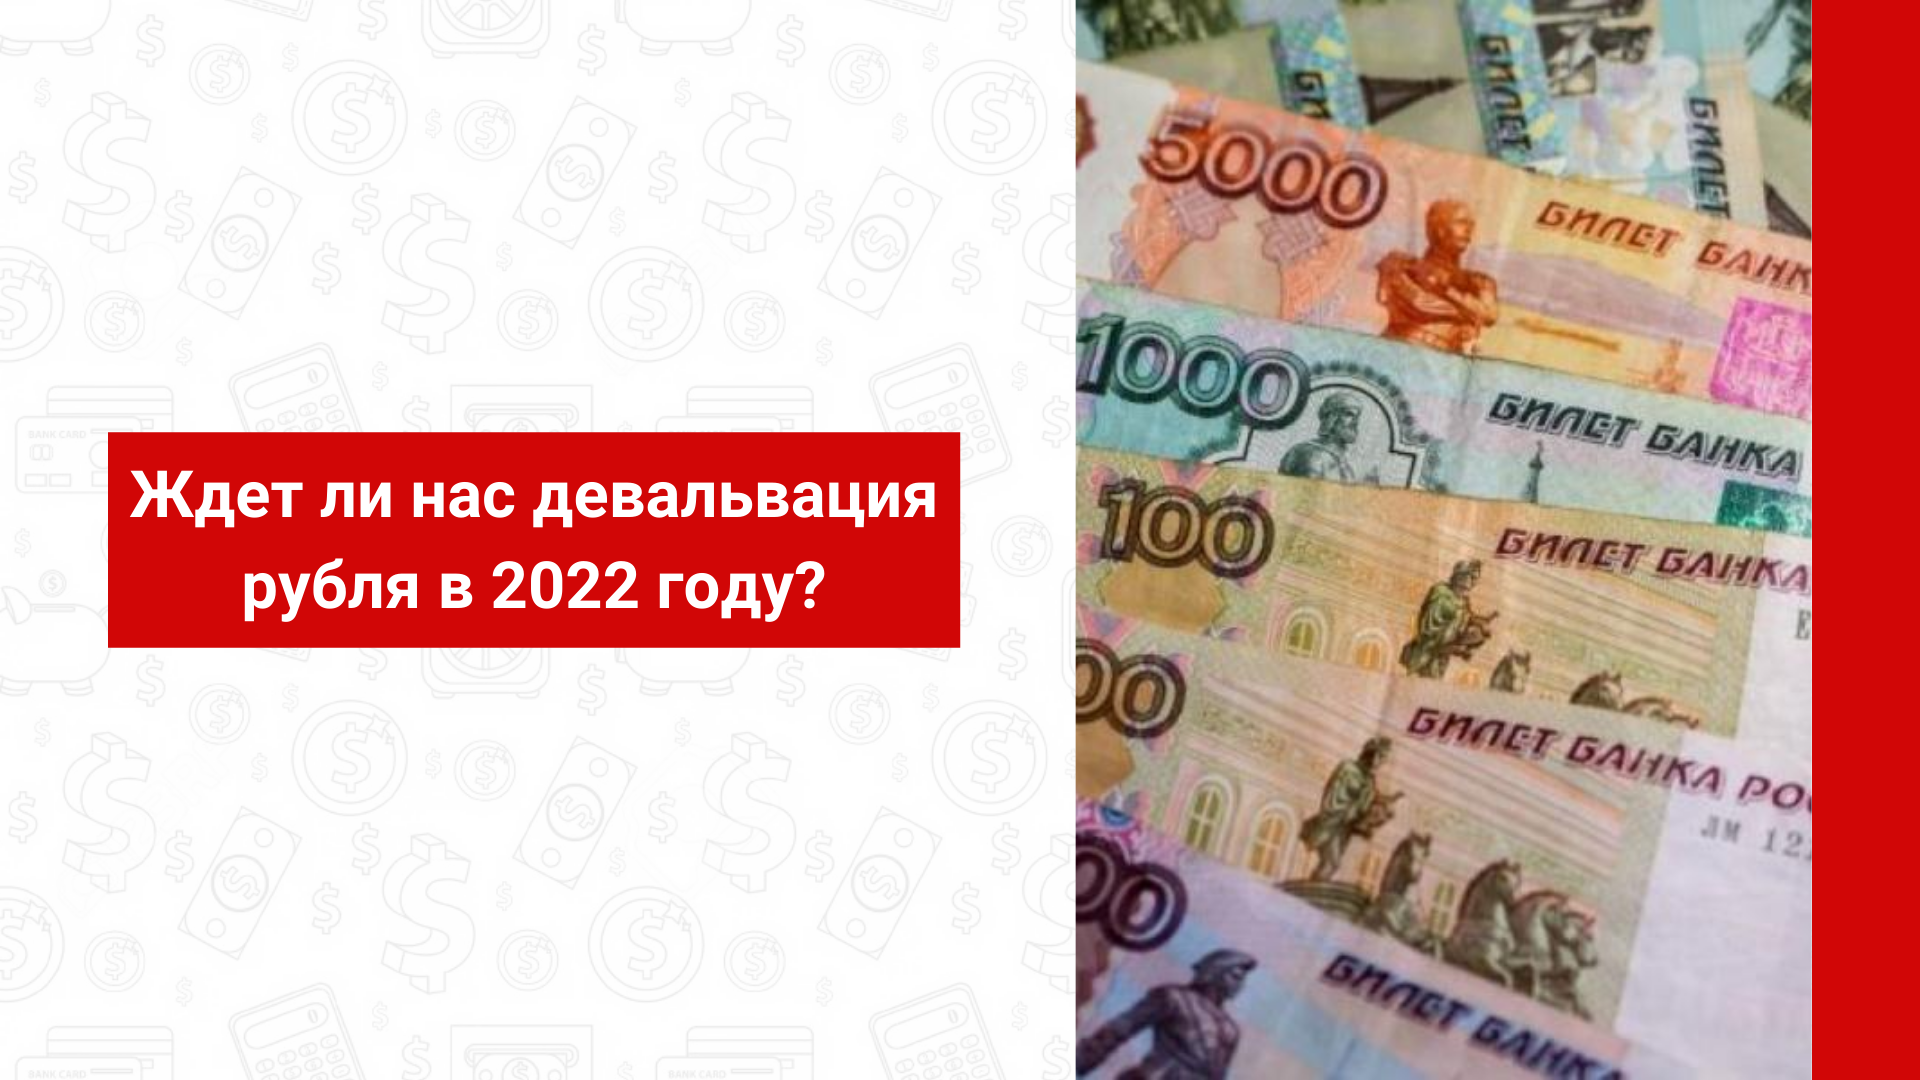 Ждет ли нас девальвация рубля в 2022 году - разбираемся в статье